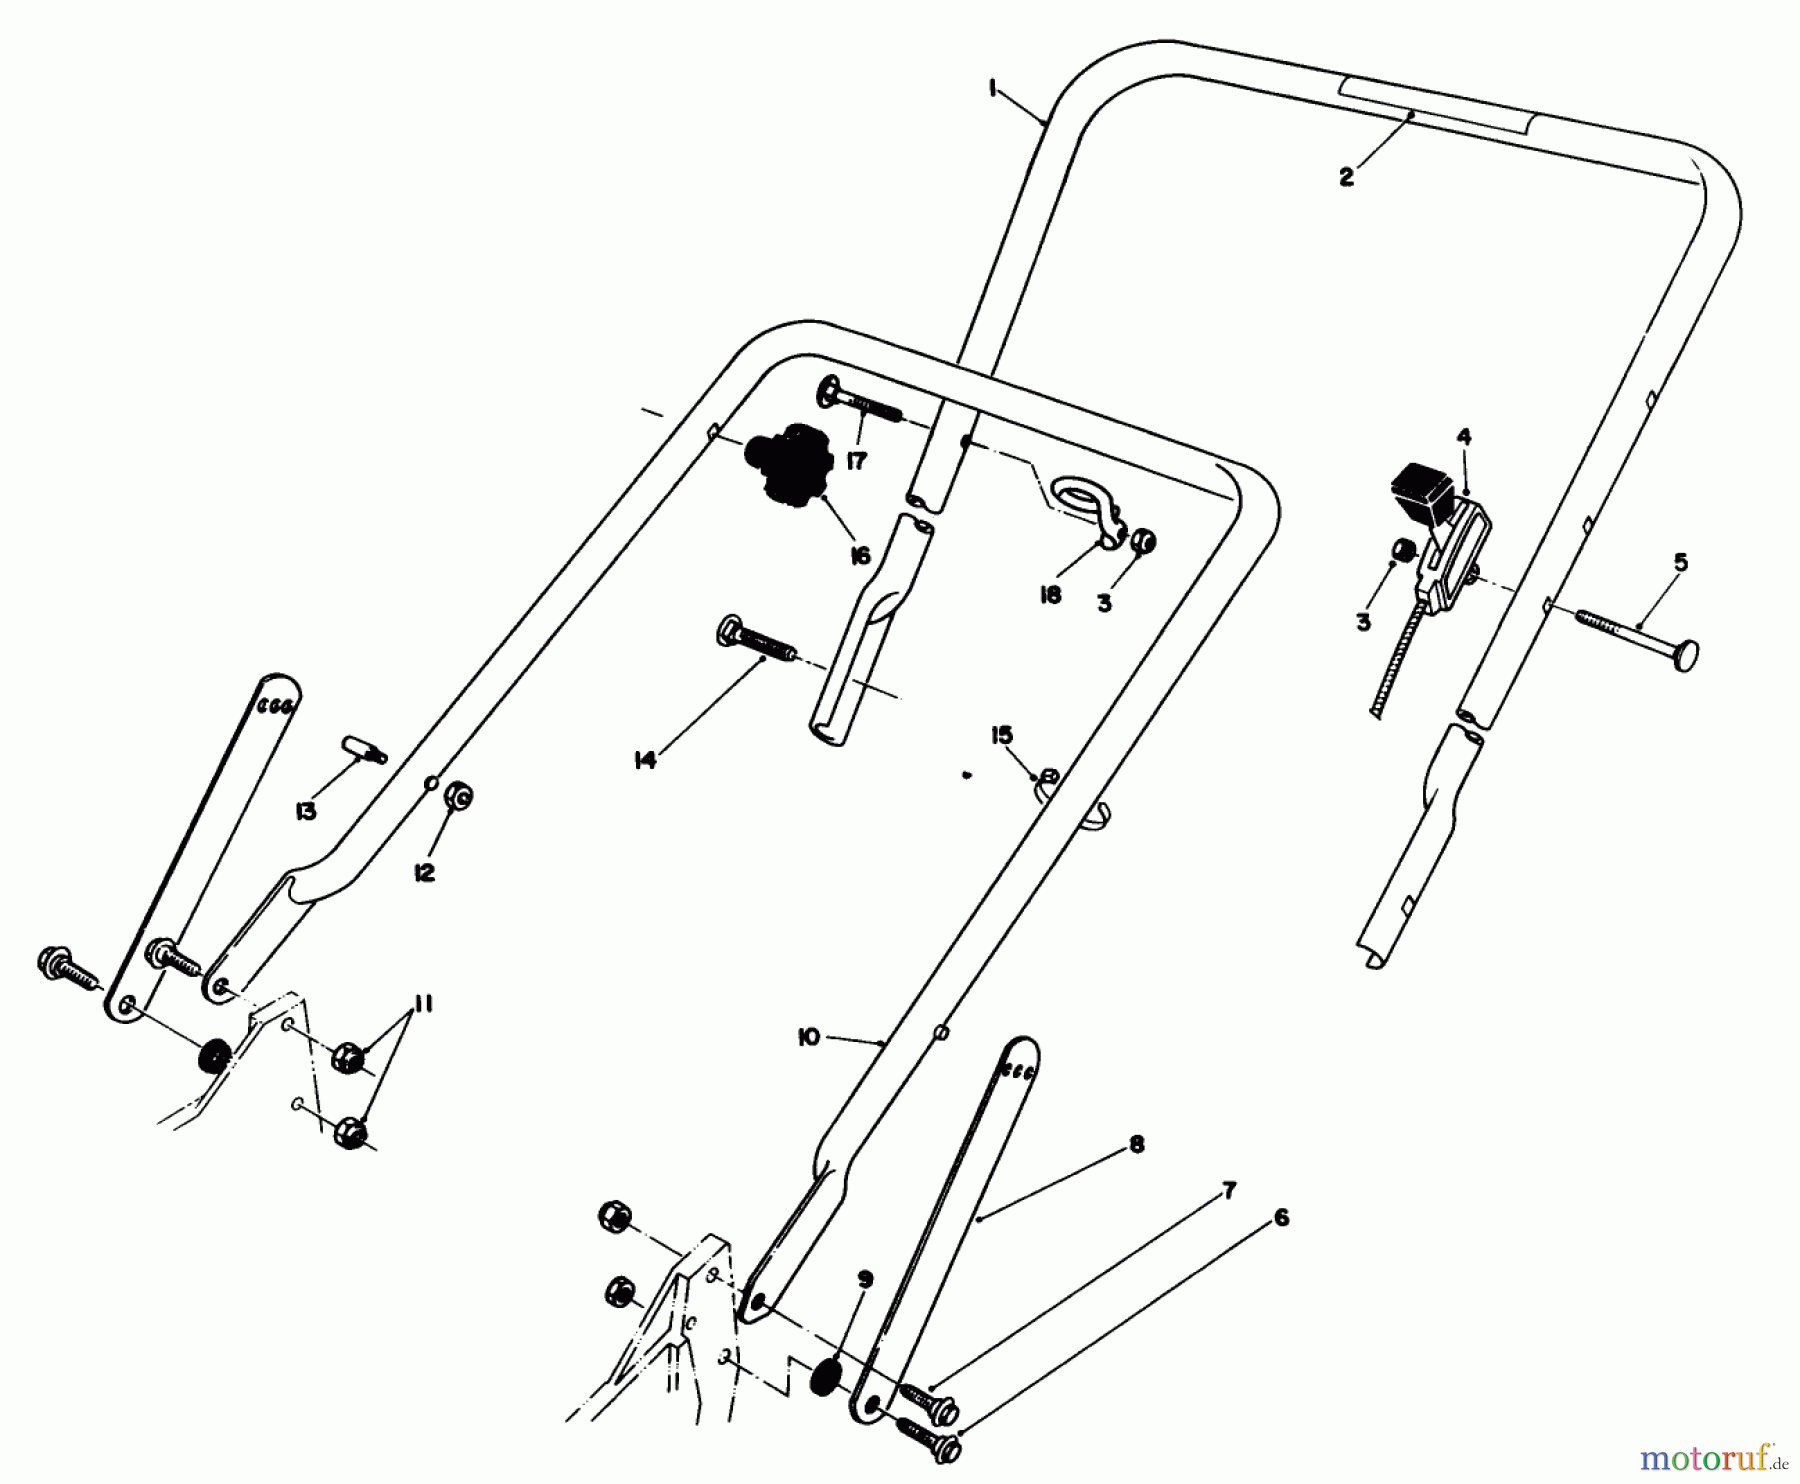  Toro Neu Mowers, Walk-Behind Seite 1 20217 - Toro Lawnmower, 1991 (1000001-1999999) HANDLE ASSEMBLY